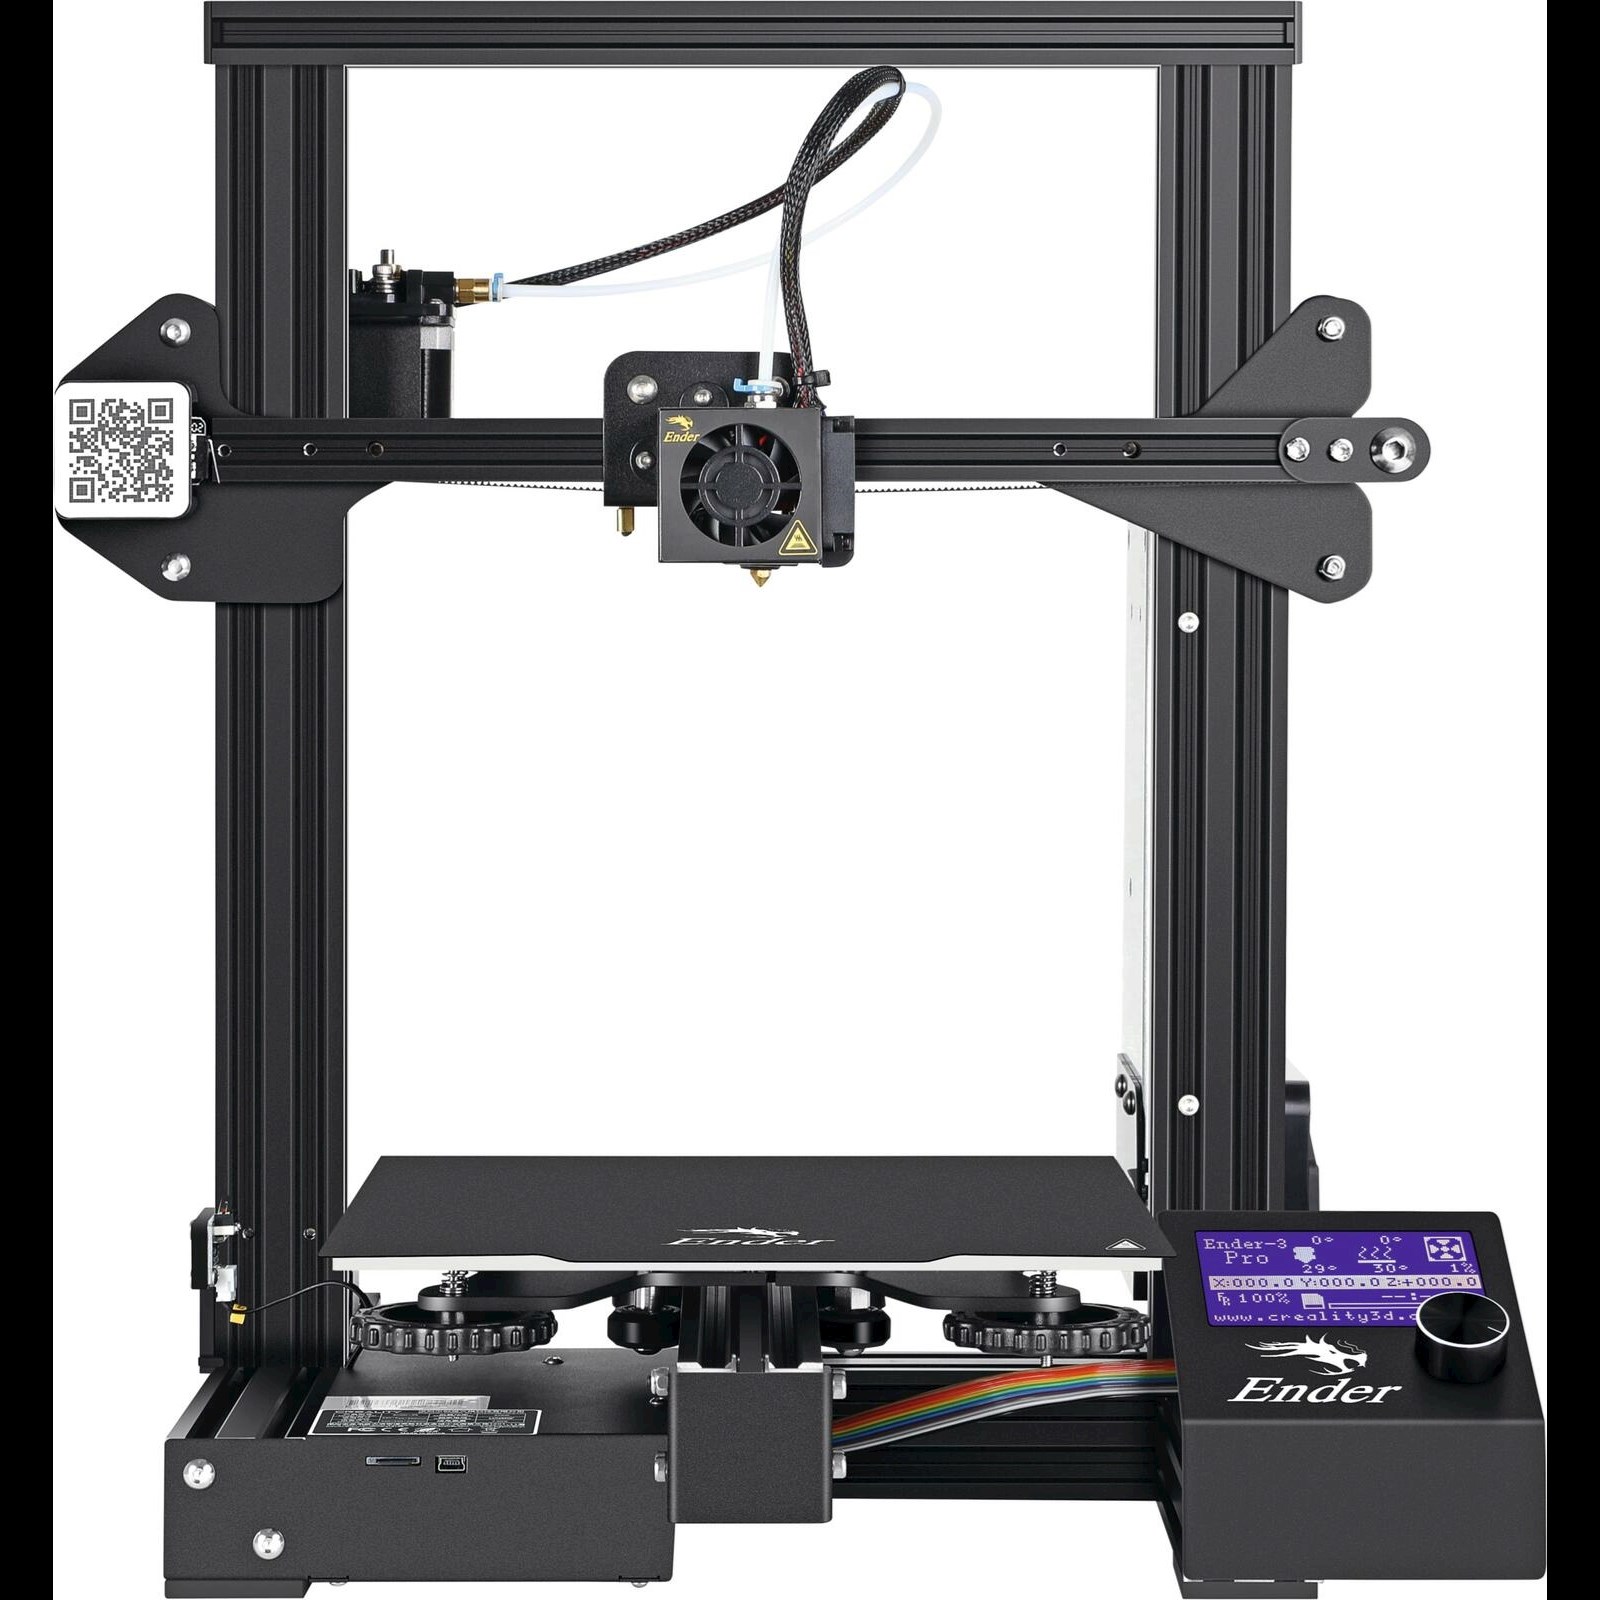 Hotend pour imprimante 3D - A-Printer Impression 3D en Suisse